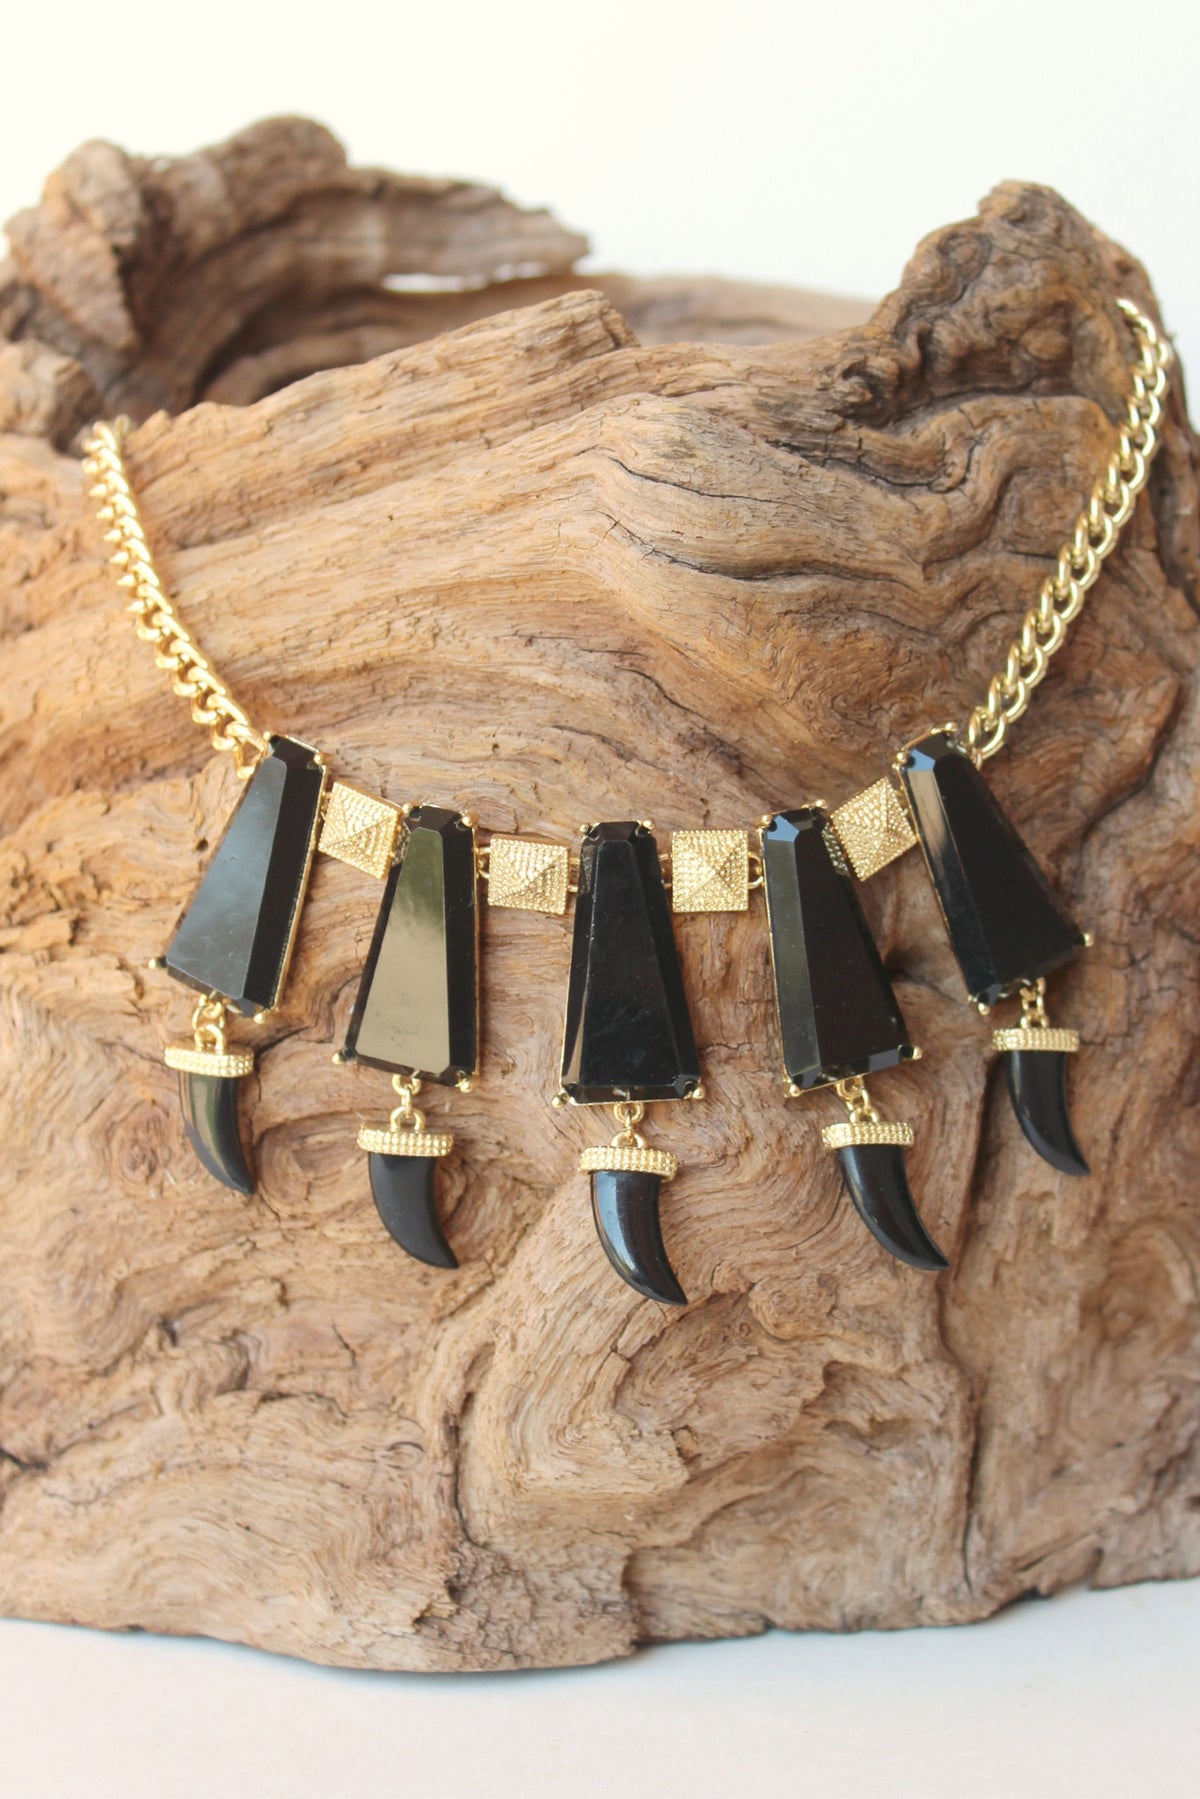 Horn Necklace, Black